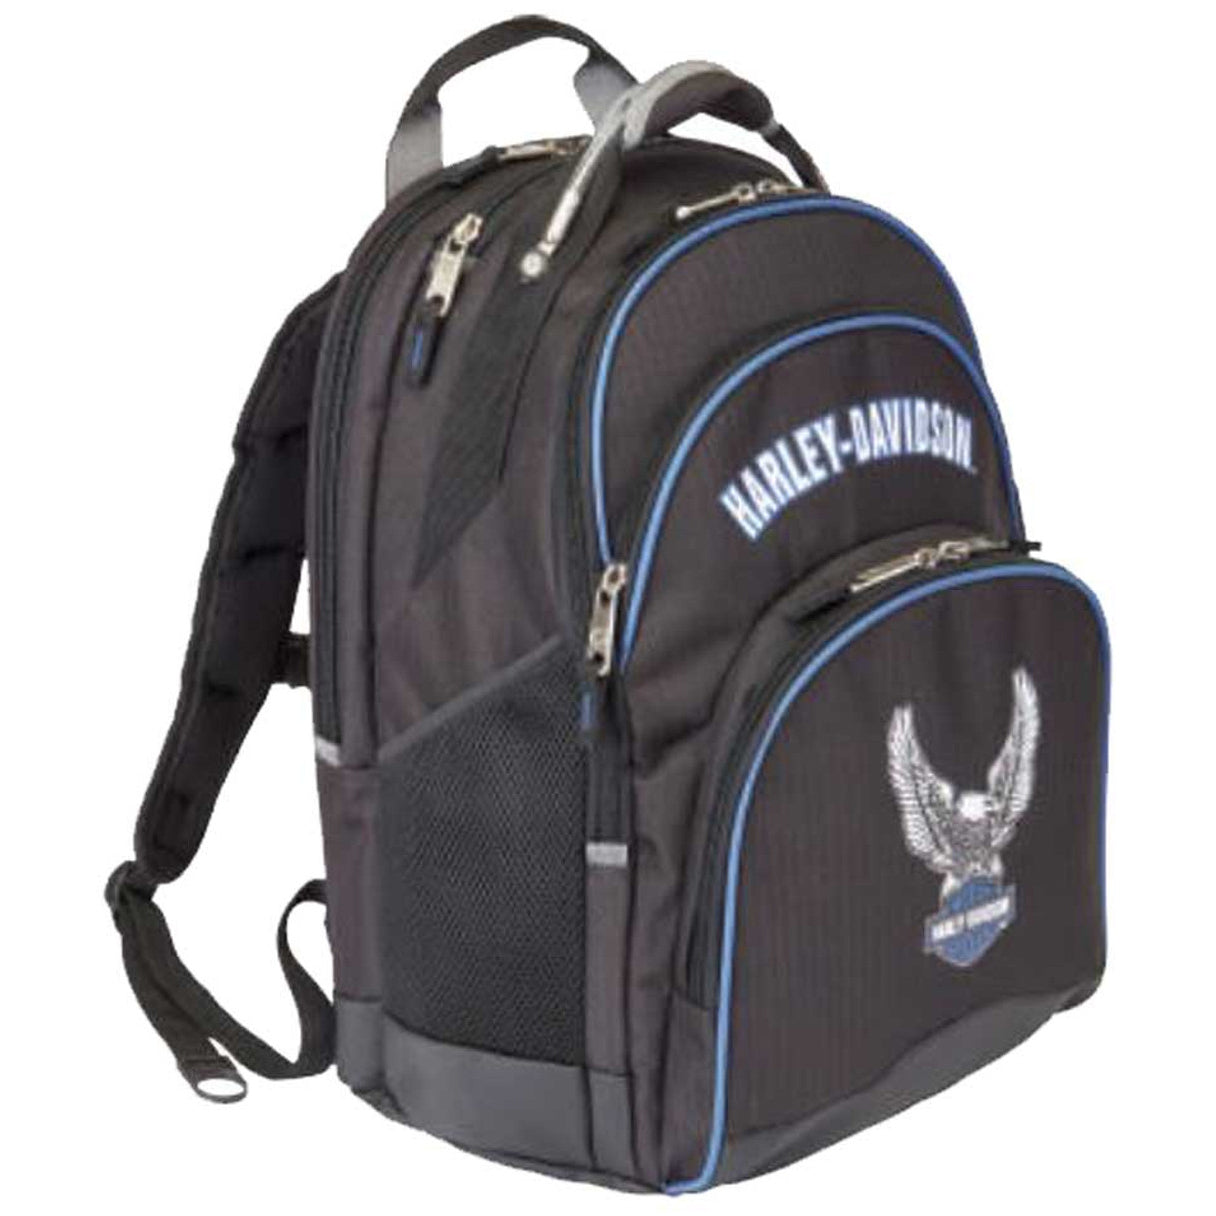 Harley-Davidson, Bags, Harley Davidson Backpack